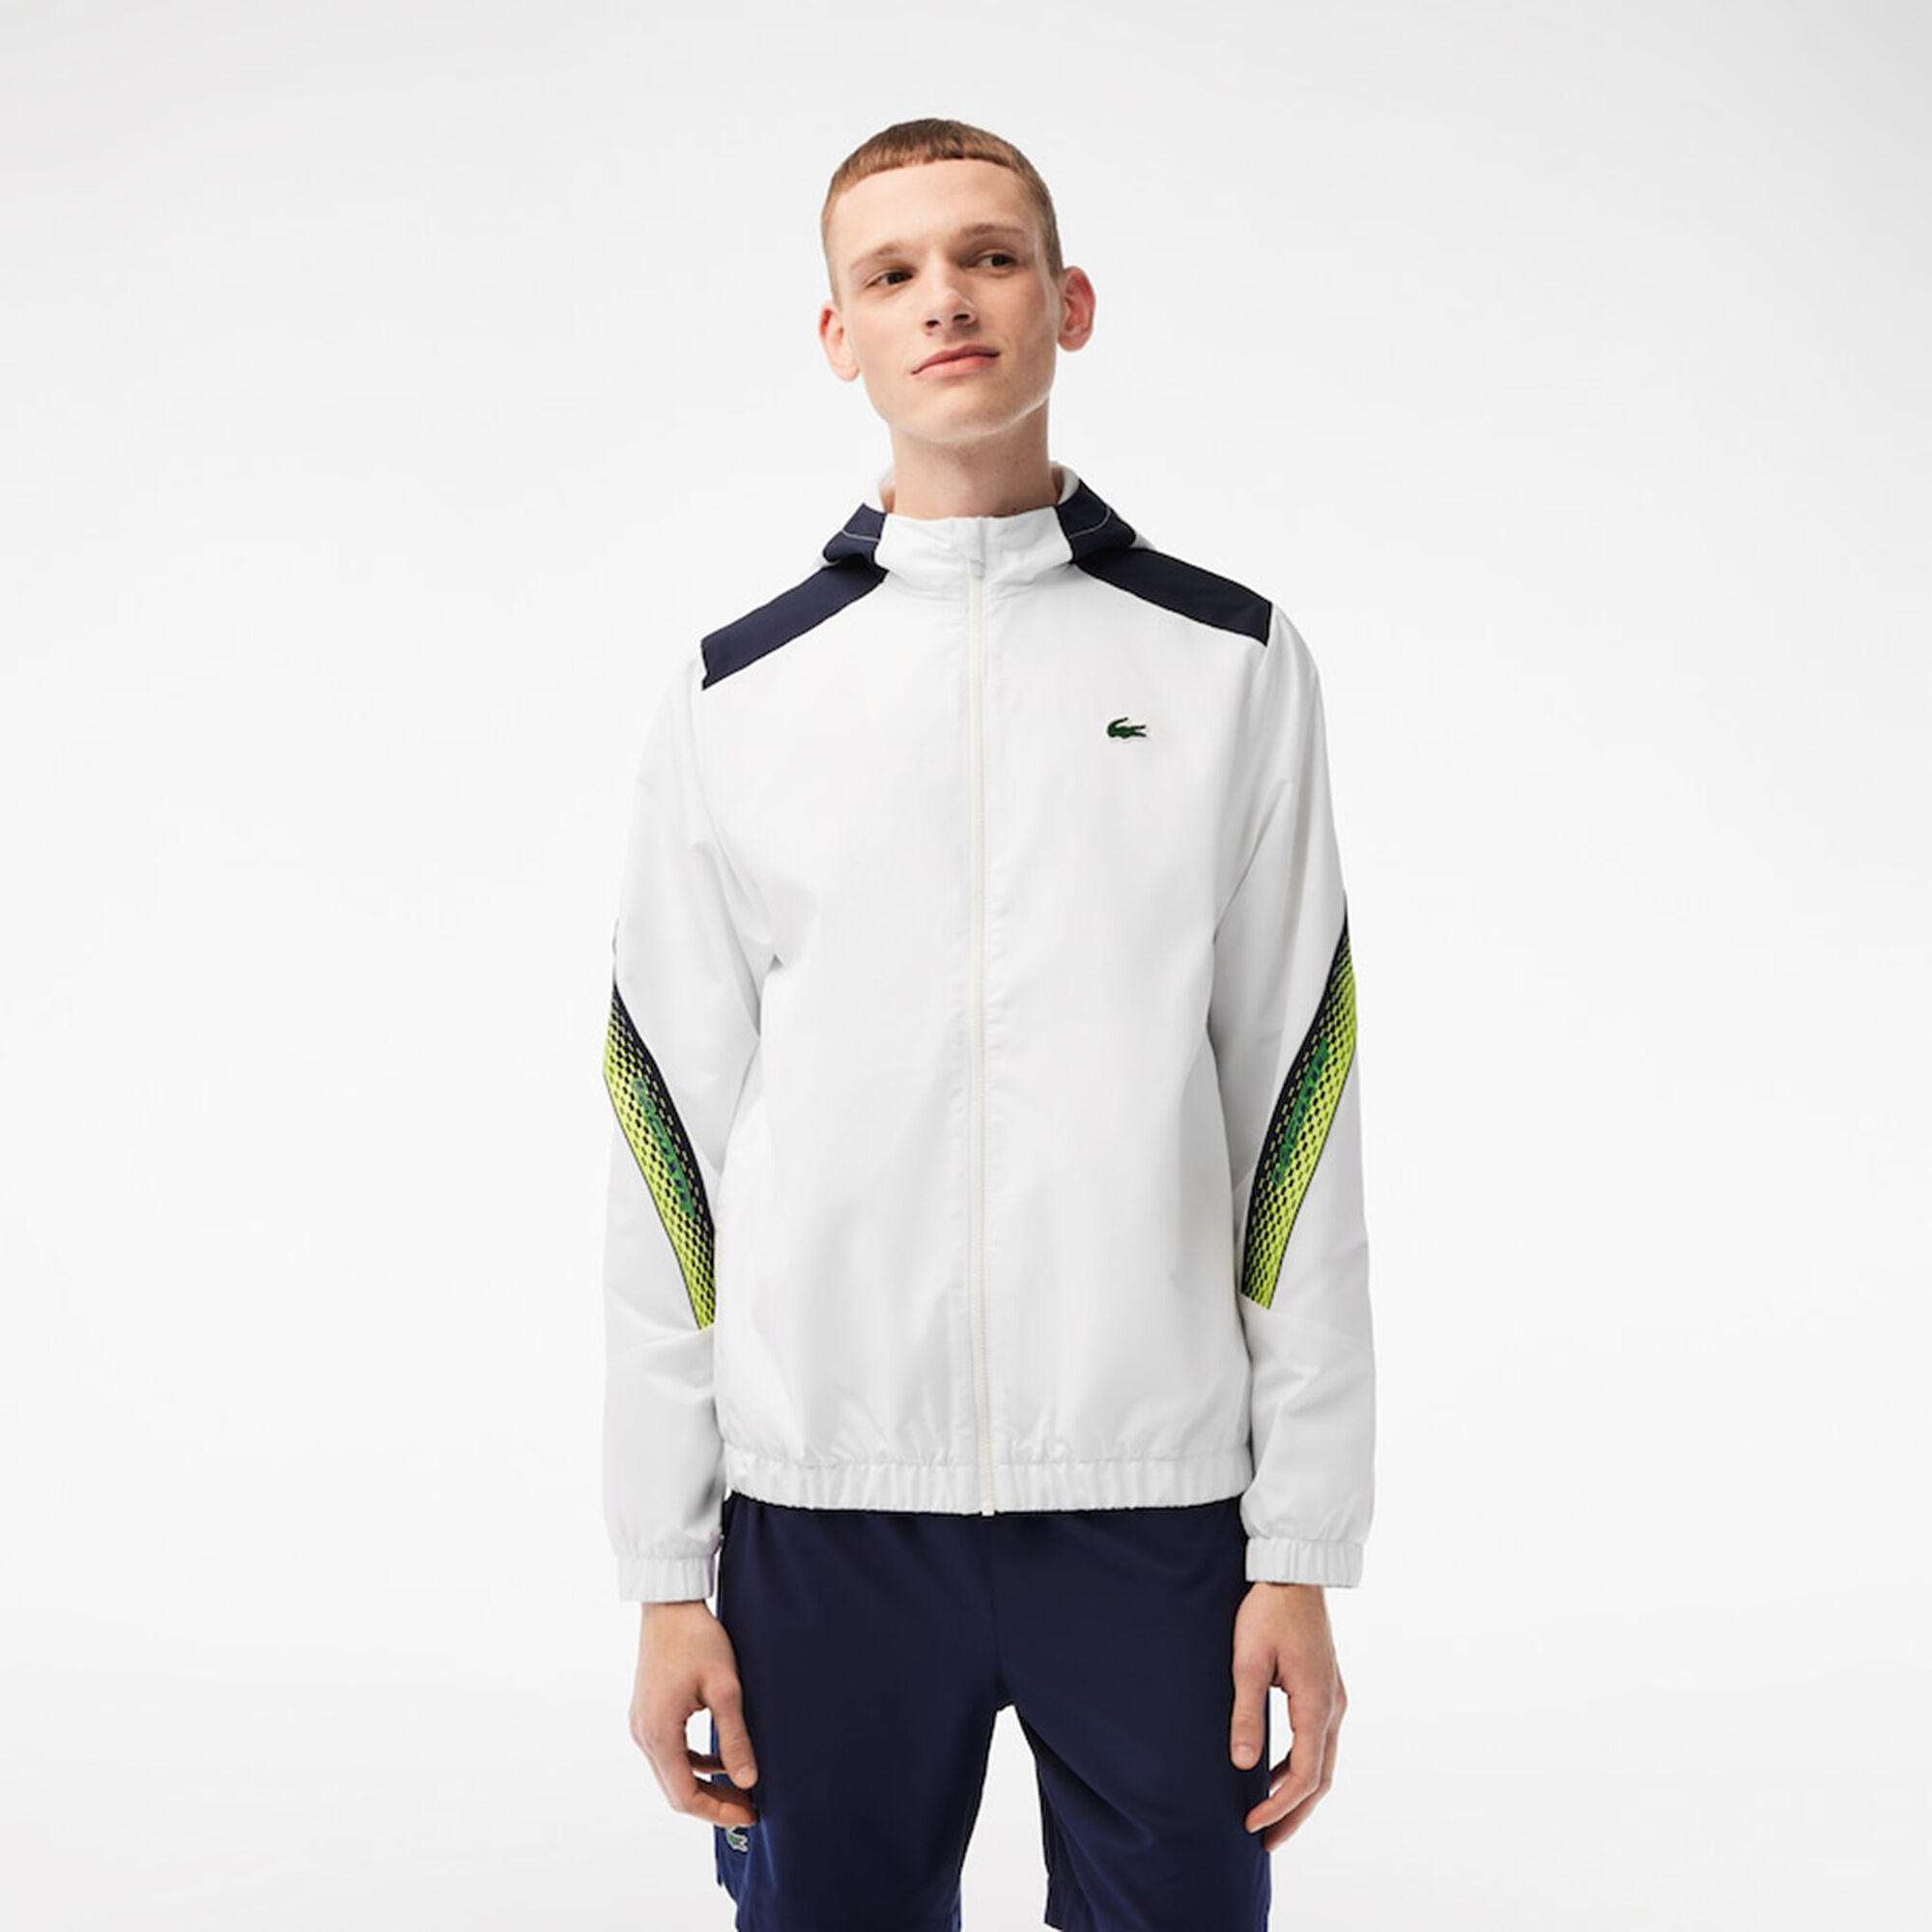 Lacoste Trainingsjacke Herren Weiß, Blau online kaufen | Tennis Point AT